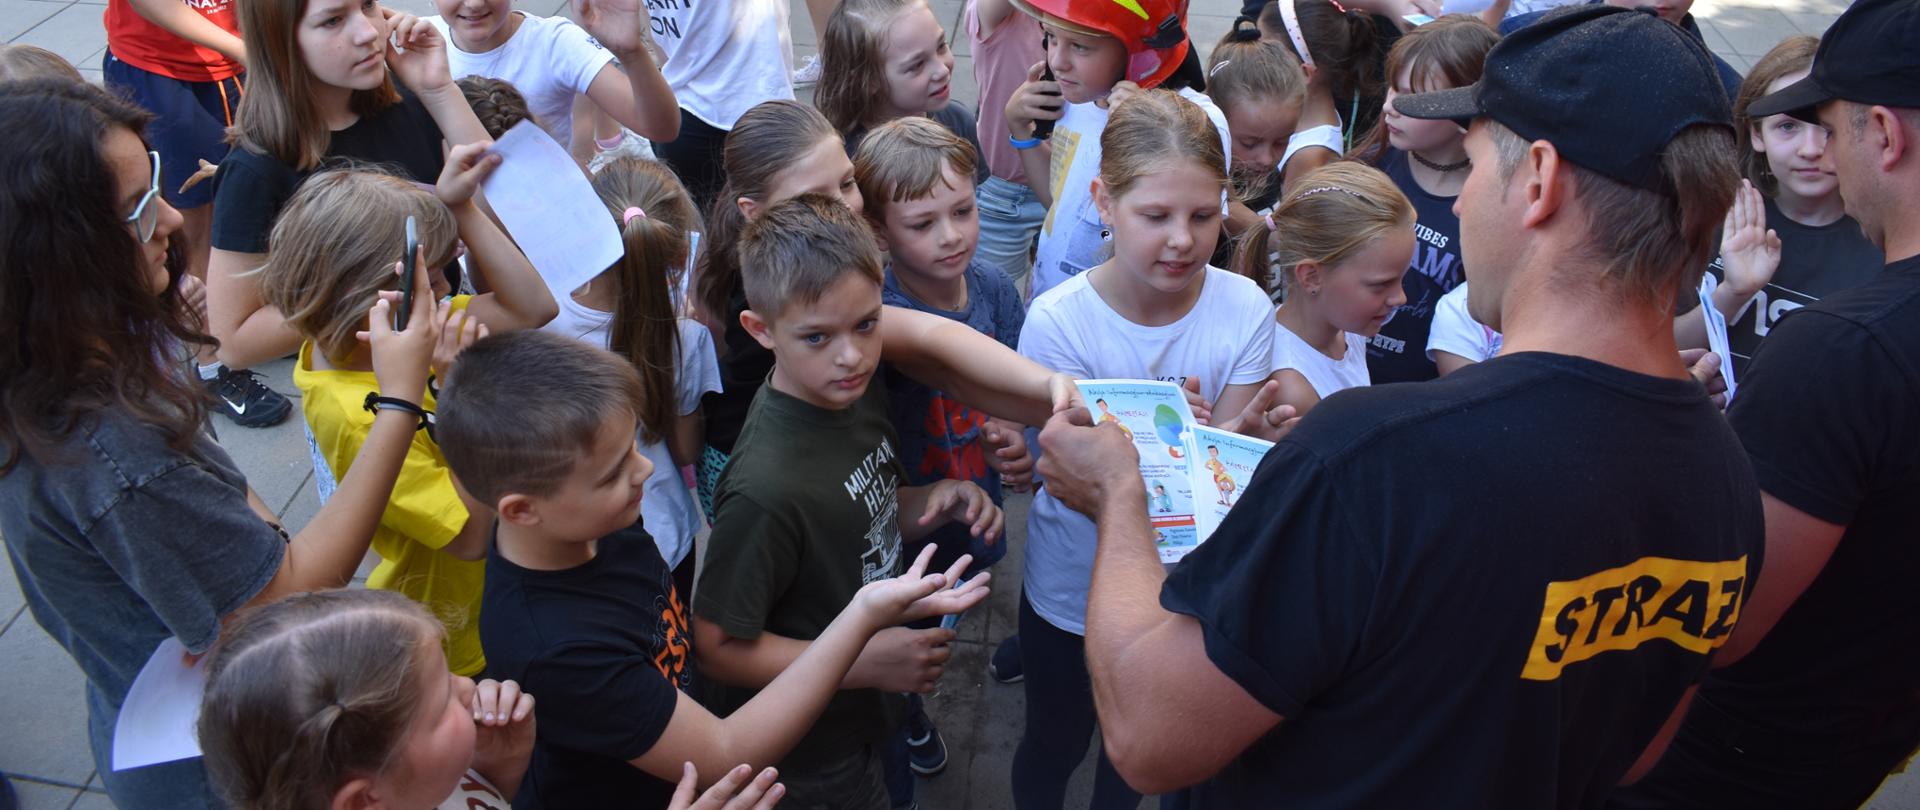 Strażak rozdaje broszury grupie dzieci i młodzieży.